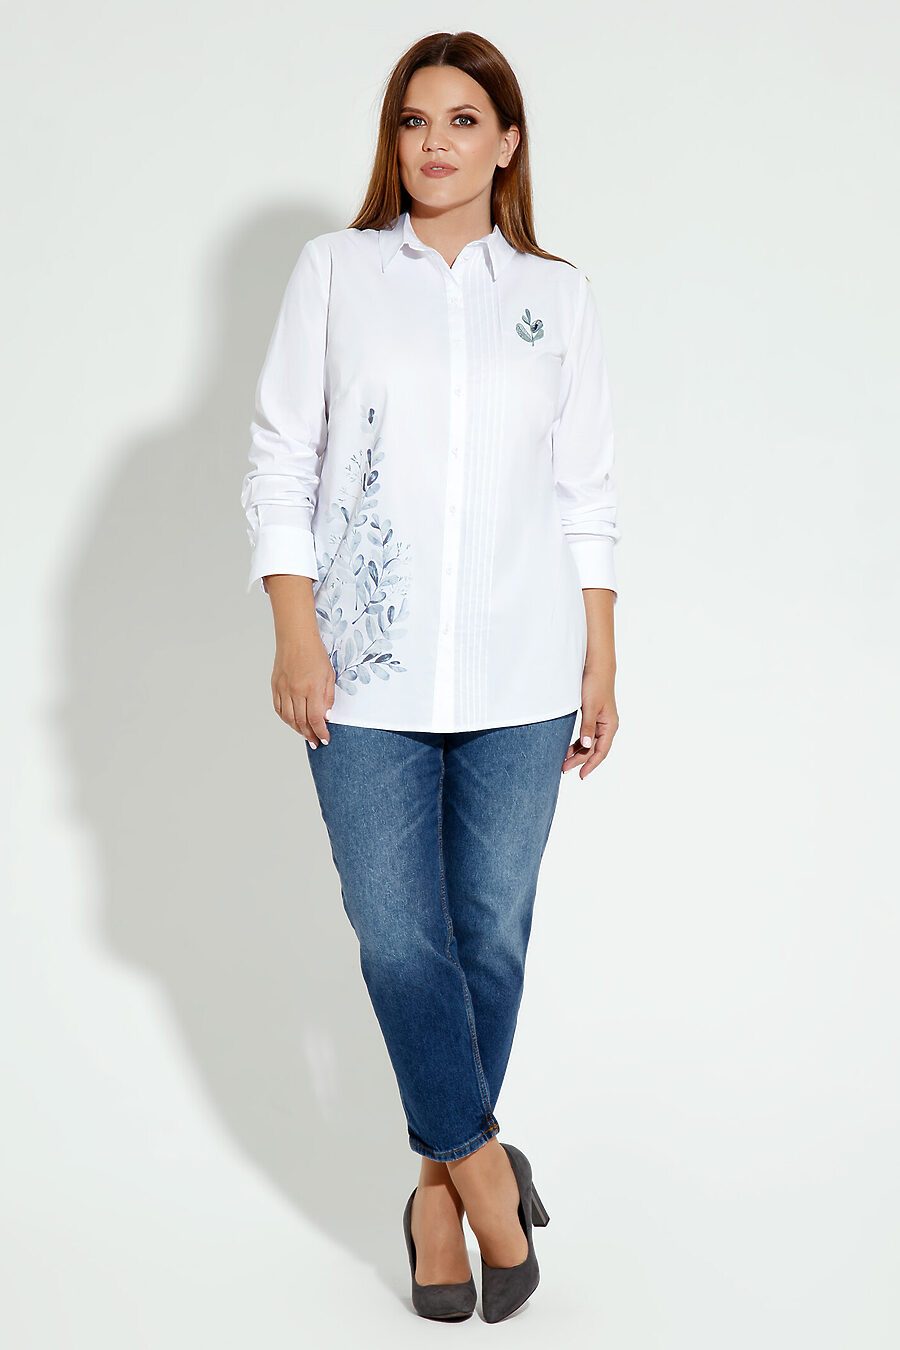 Блуза для женщин PANDA 665033 купить оптом от производителя. Совместная покупка женской одежды в OptMoyo